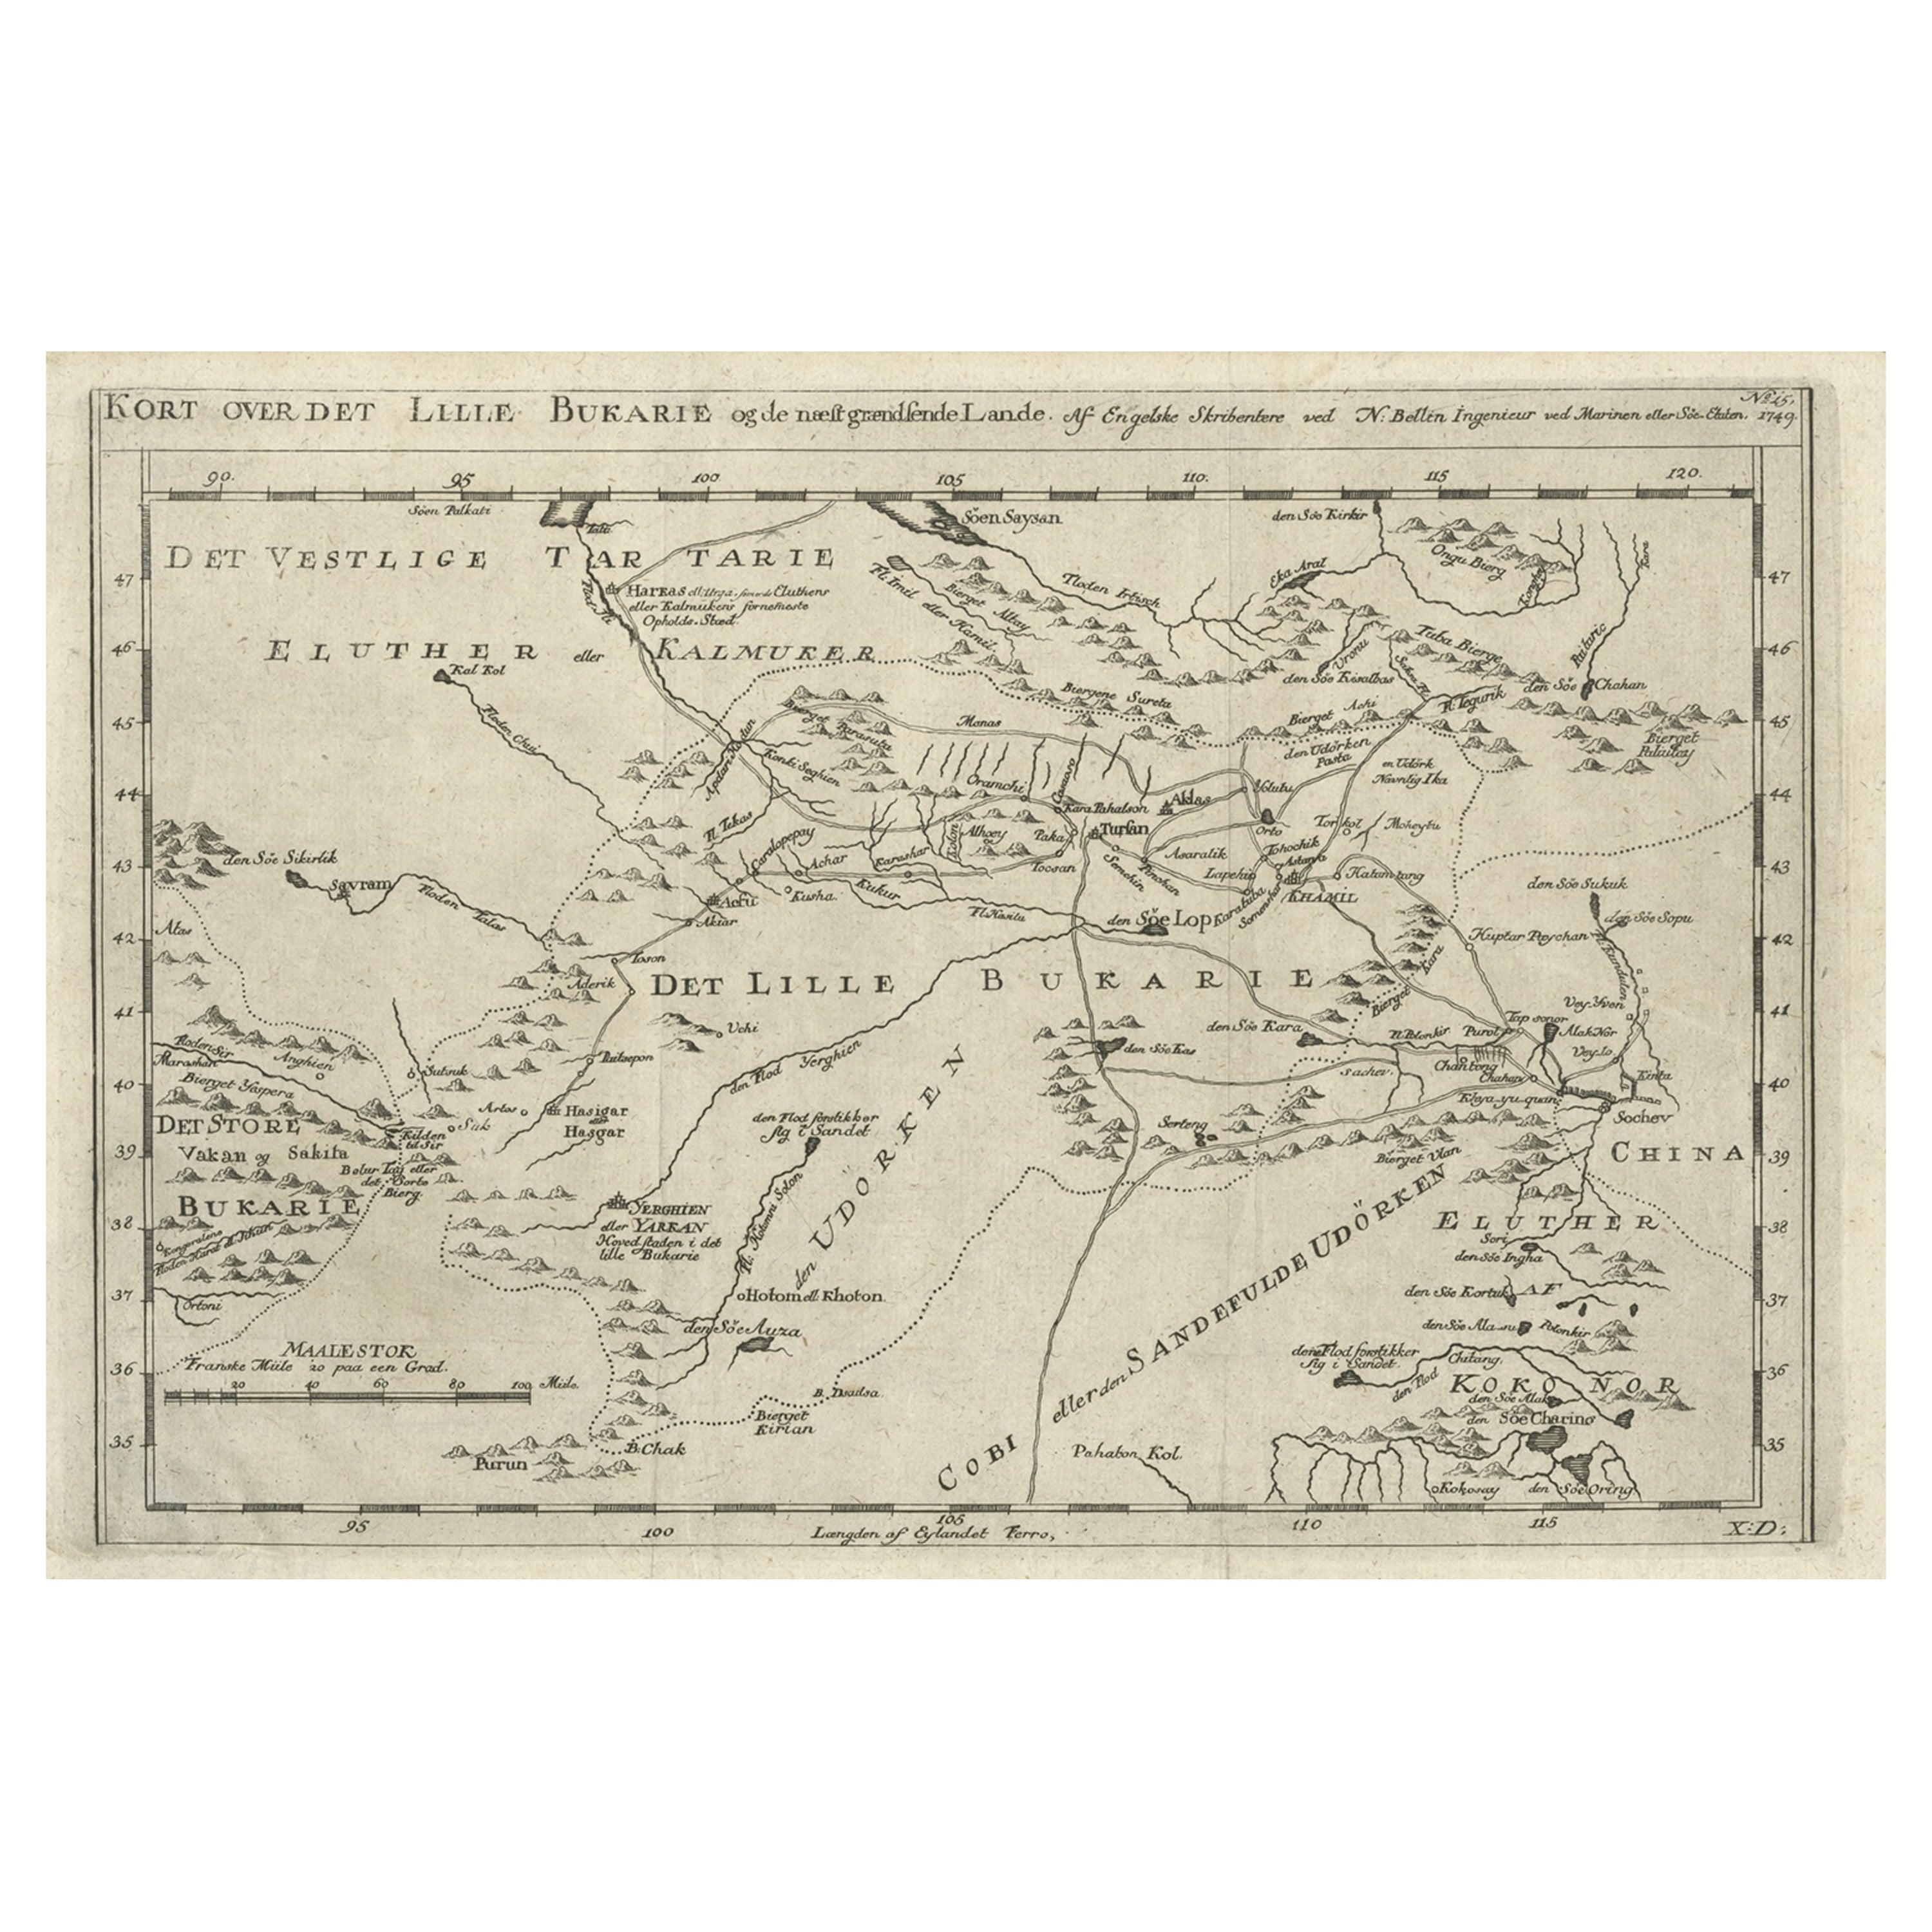 Old Map of Turkmenistan, Uzbekistan, Afghanistan, Tajikistan, Kyrgyzstan, 1757 For Sale